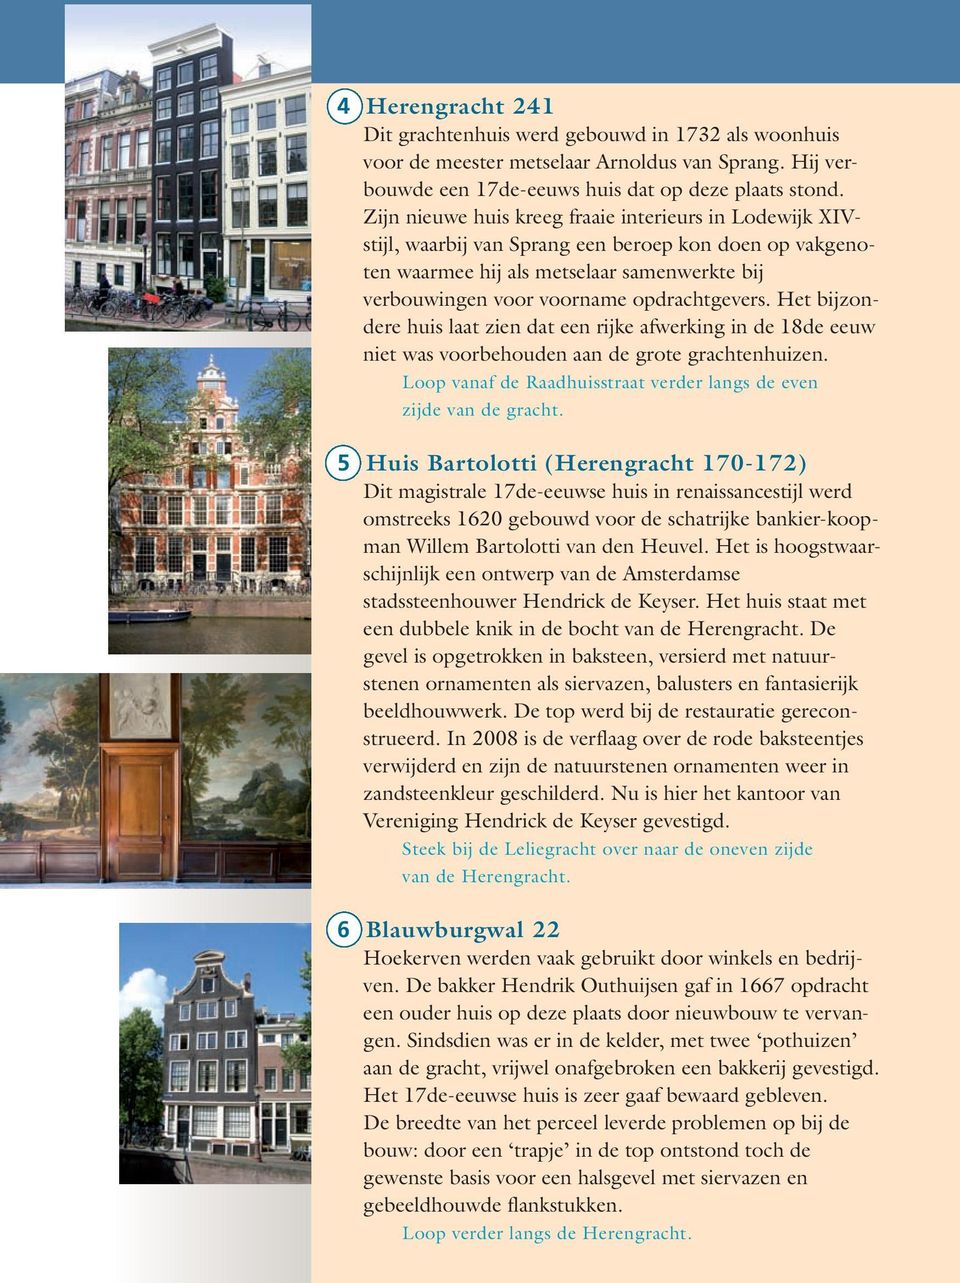 Het bijzondere huis laat zien dat een rijke afwerking in de 18de eeuw niet was voorbehouden aan de grote grachtenhuizen. Loop vanaf de Raadhuisstraat verder langs de even zijde van de gracht.